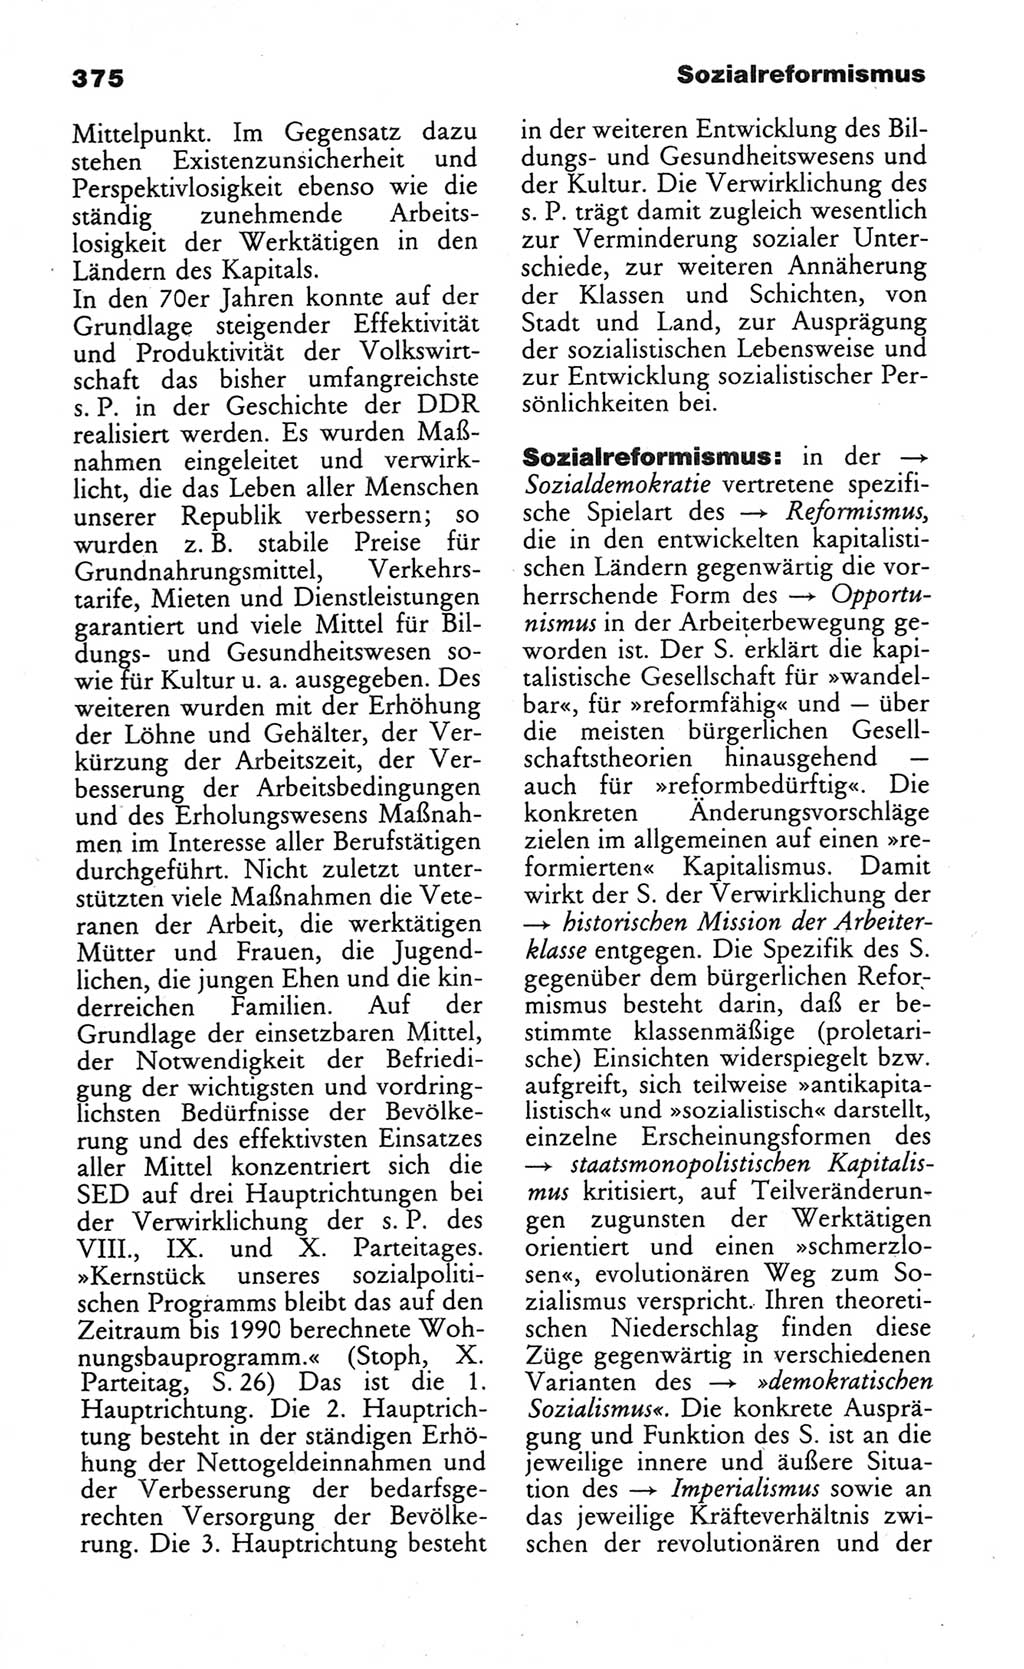 Wörterbuch des wissenschaftlichen Kommunismus [Deutsche Demokratische Republik (DDR)] 1984, Seite 375 (Wb. wiss. Komm. DDR 1984, S. 375)